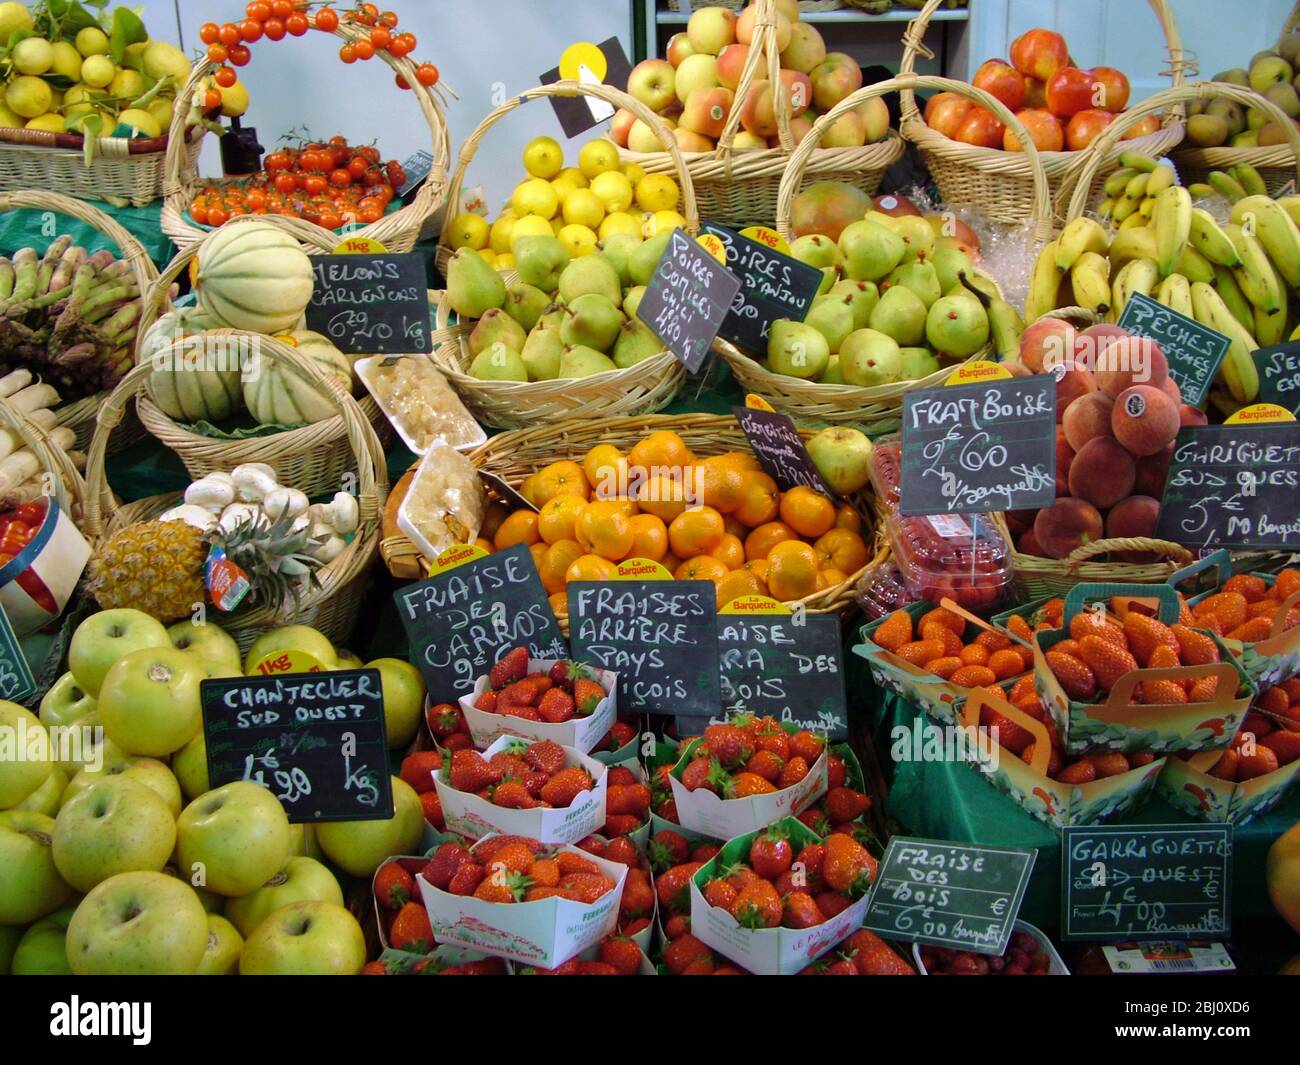 Wunderbare Präsentation von frischen Früchten am Stand in der Markthalle in Menton, Südfrankreich - Stockfoto